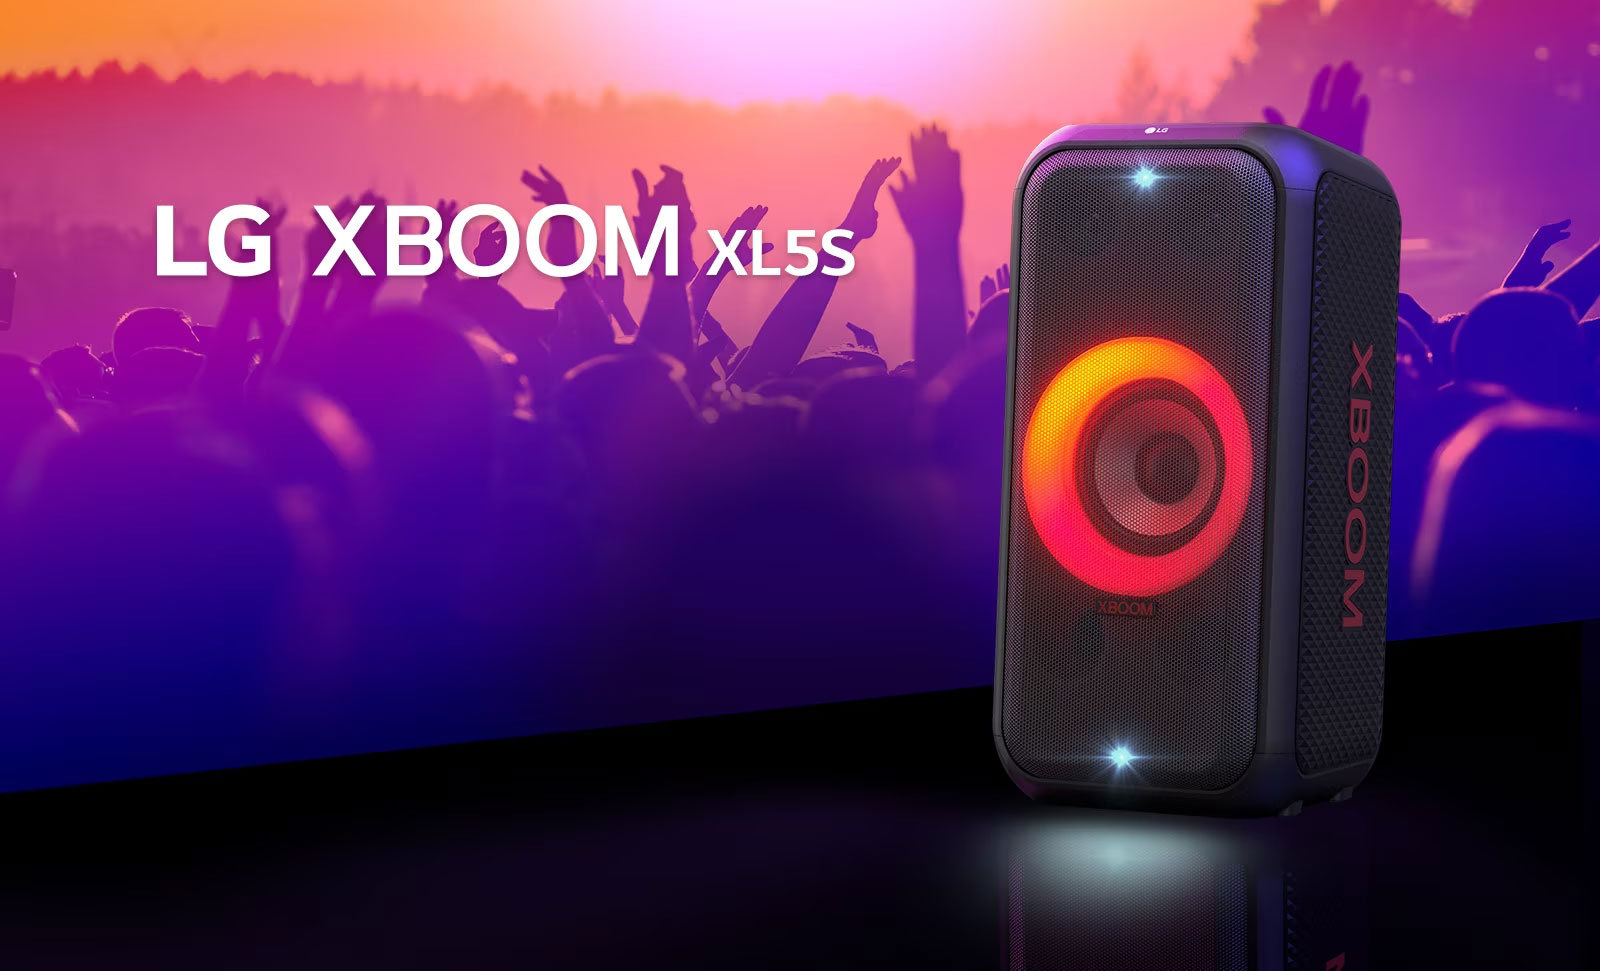 LG XBOOM XL5S е поставен на сцената с включени светлини в преливащи се червени и оранжеви цветове. Зад сцената хора се наслаждават на музиката.